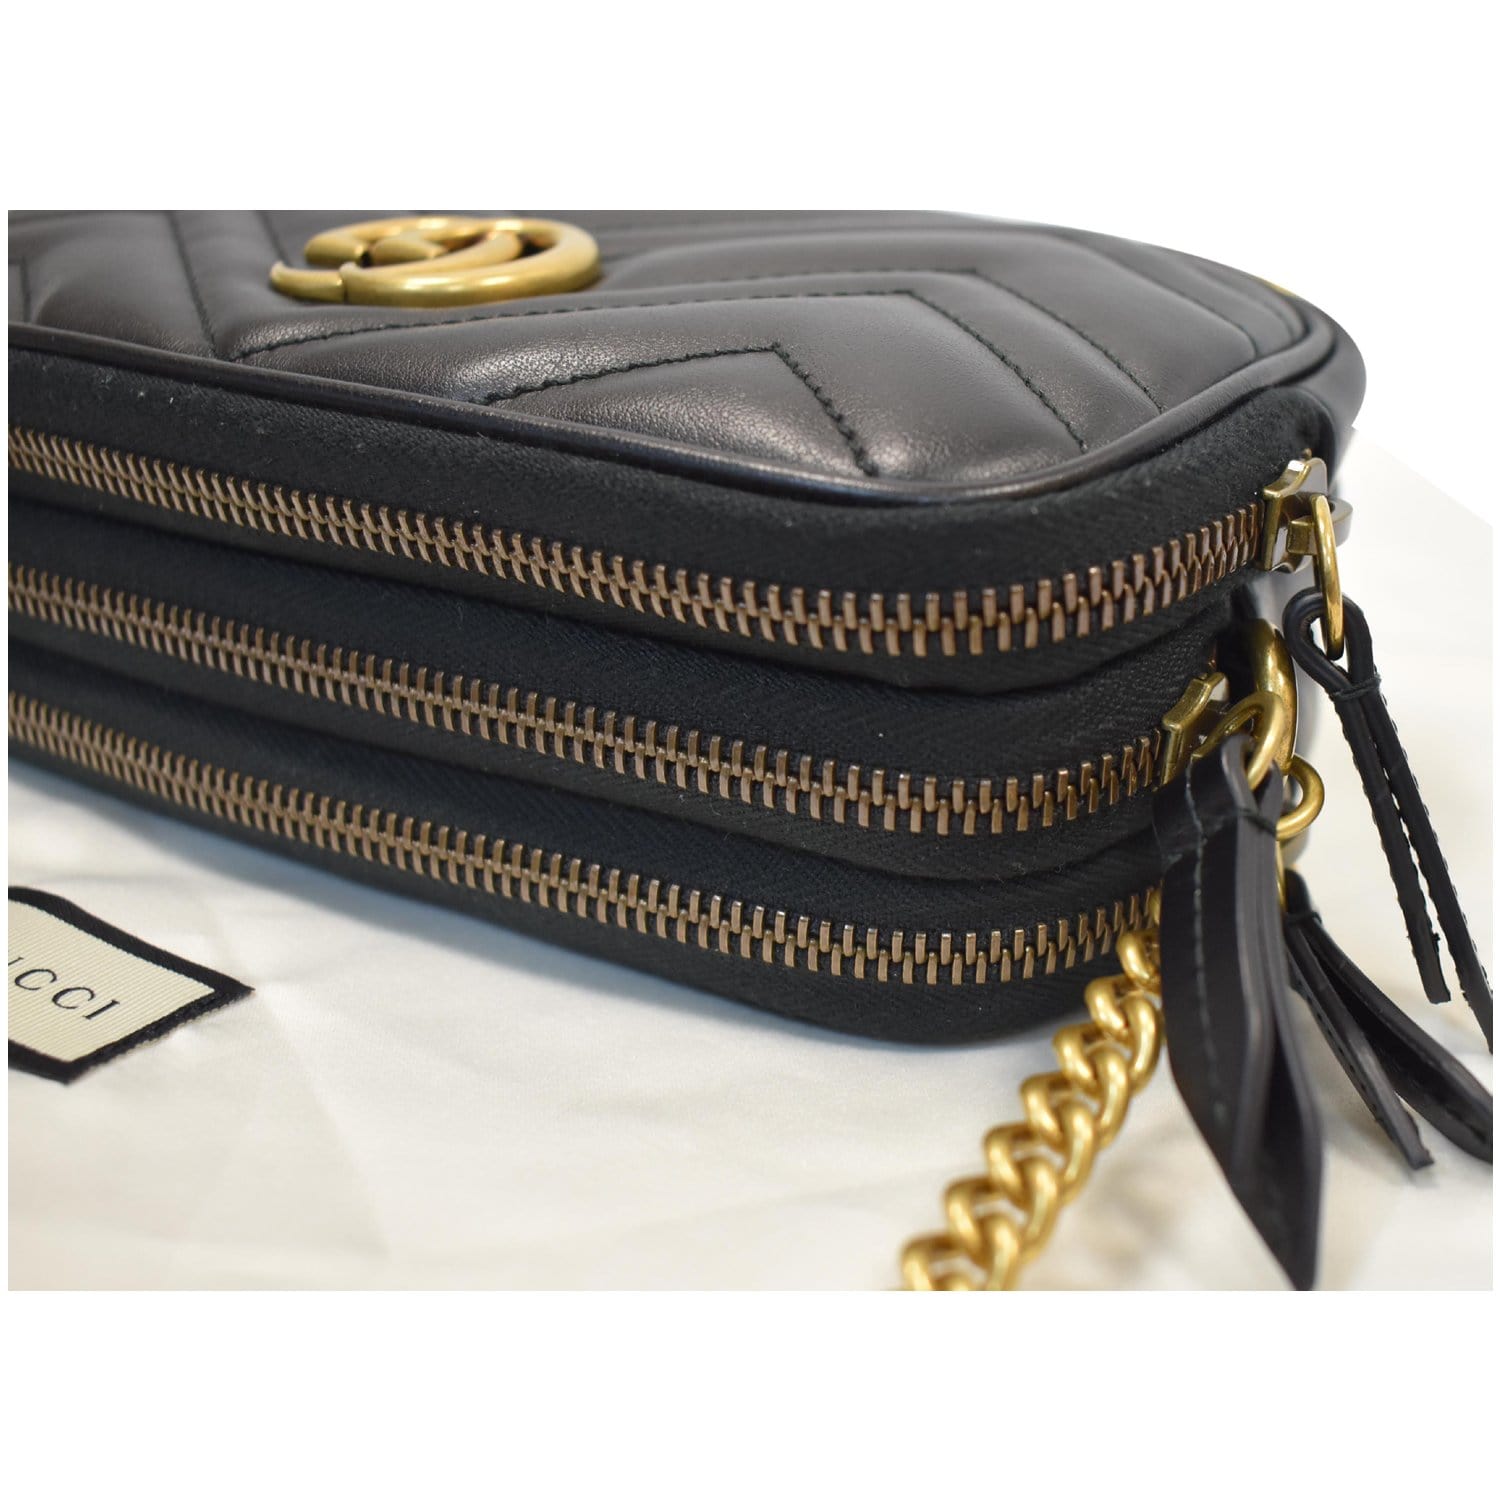 Gucci Gg Marmont Mini Chain Bag in Black